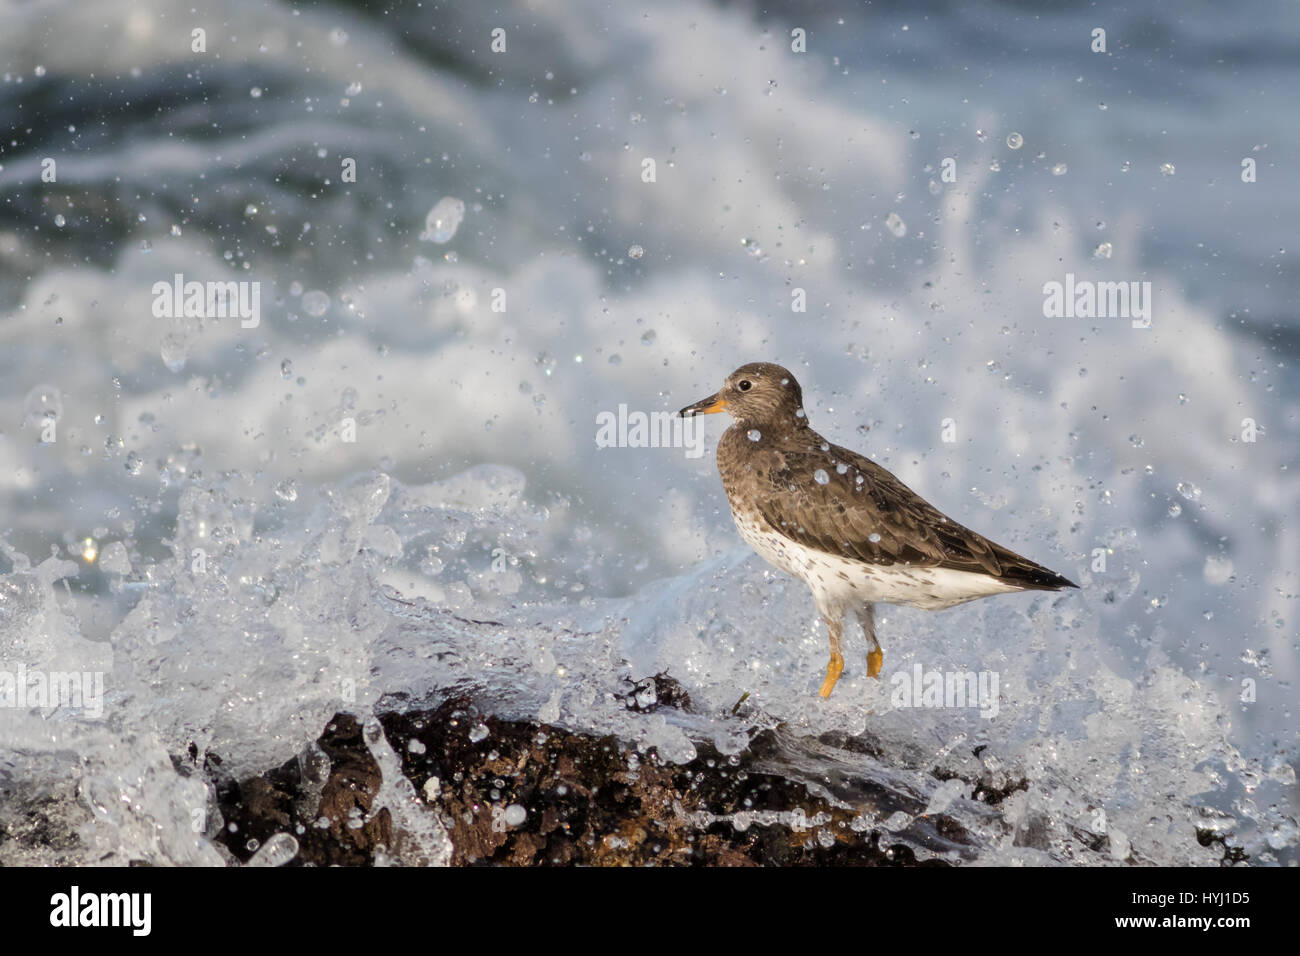 Ein Surfbird Schlachten die starke Flut bei der Fütterung auf Krebstiere am Rand der Felsen. Diese Vögel sind zäh und gedeihen in diesem Umfeld Stockfoto